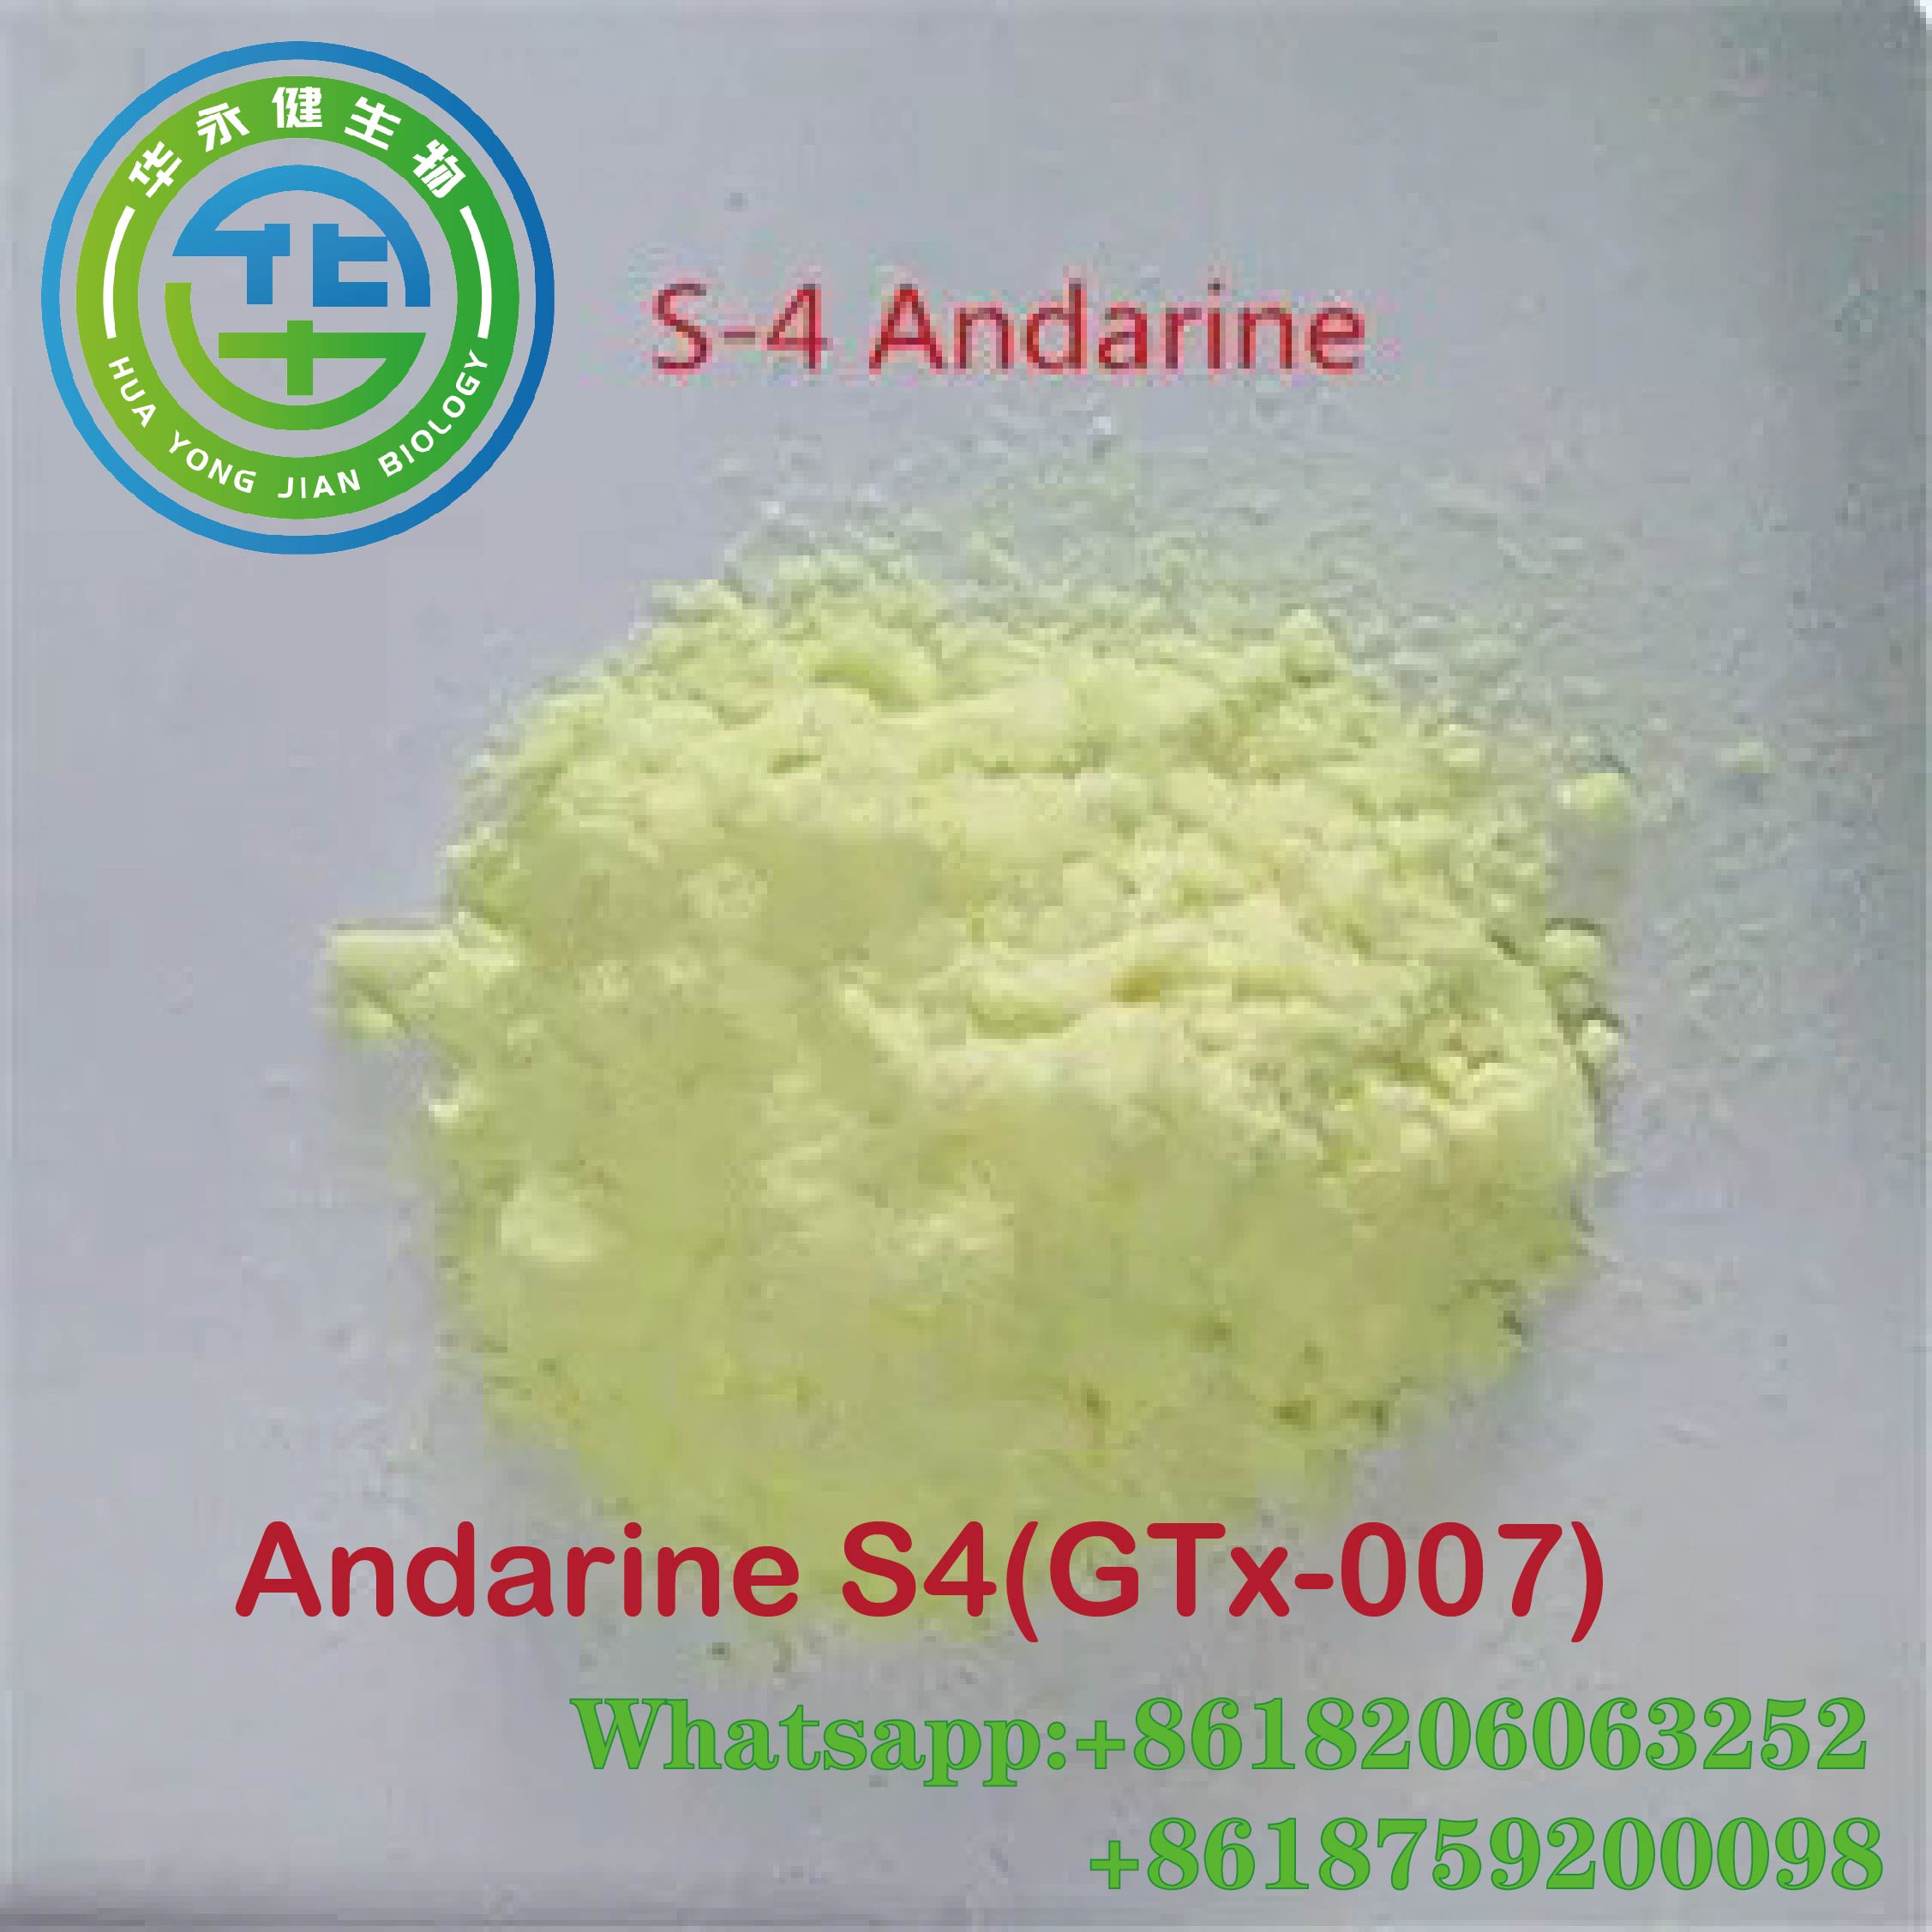 Andarine S4 Sarm Powder Steroids Foda CasNO.401900-40-1 Fakitin Stealth 100% Garanti na jigilar kaya Featured Hoton